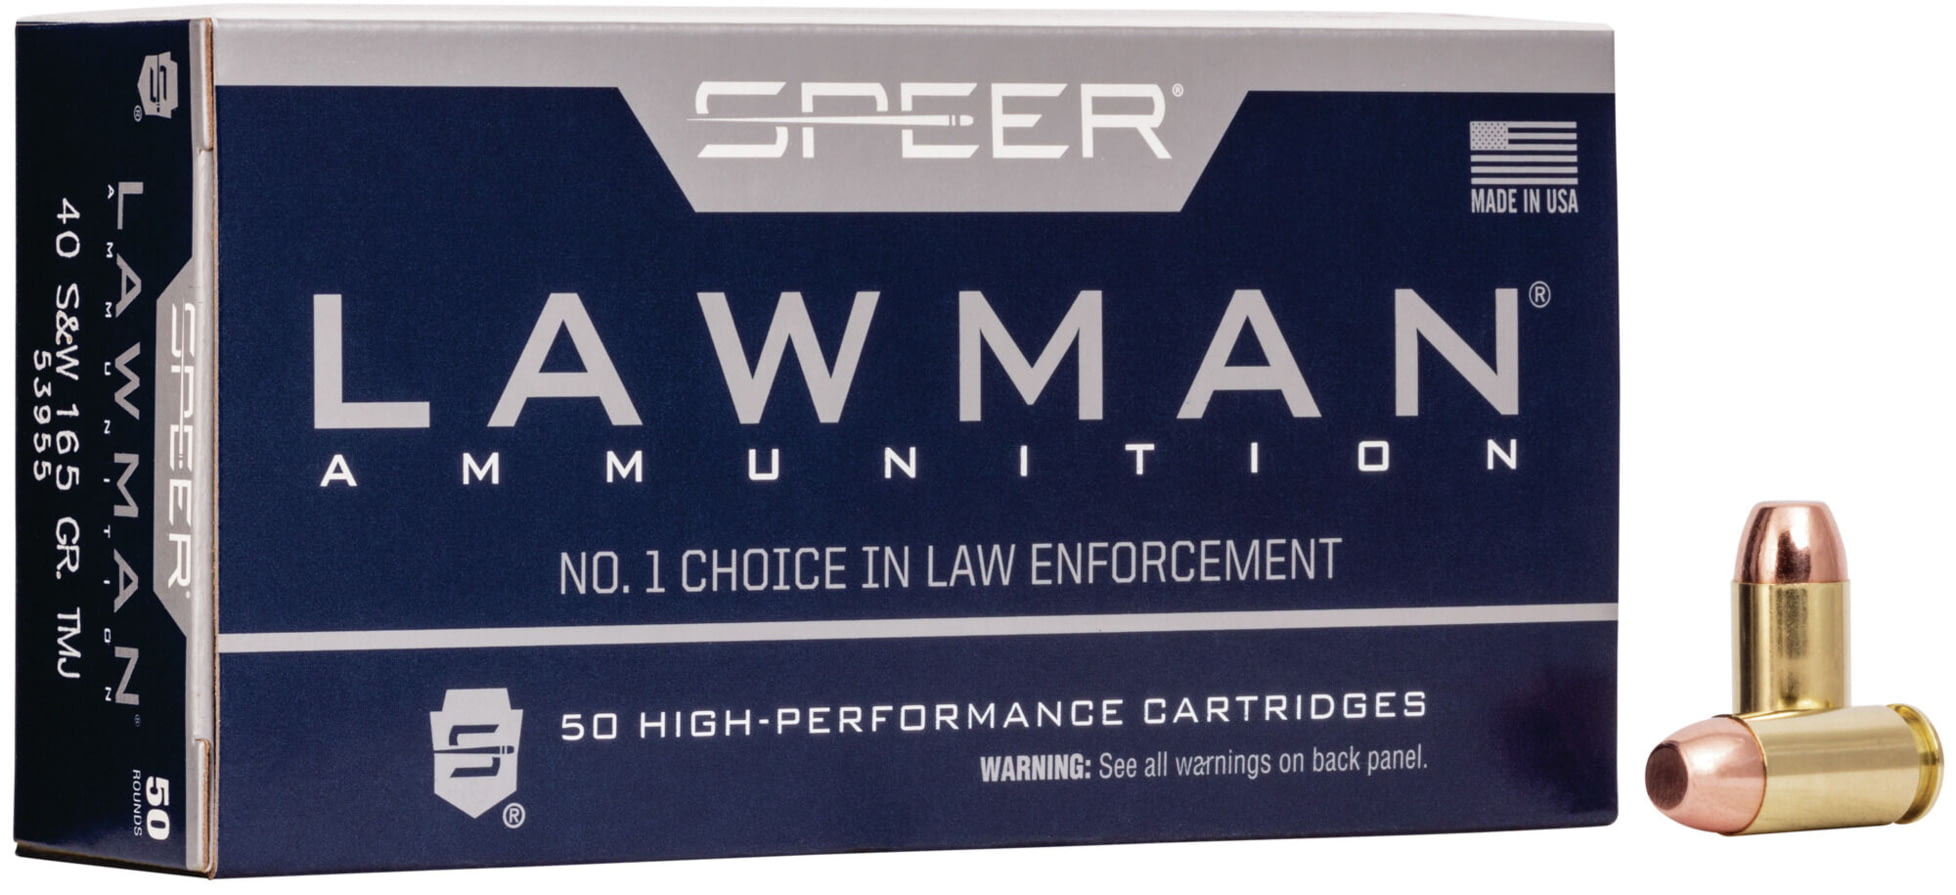 Speer Lawman Handgun Training .40 S&W 165 grain Total Metal Jacket Centerfire Pistol Ammunition